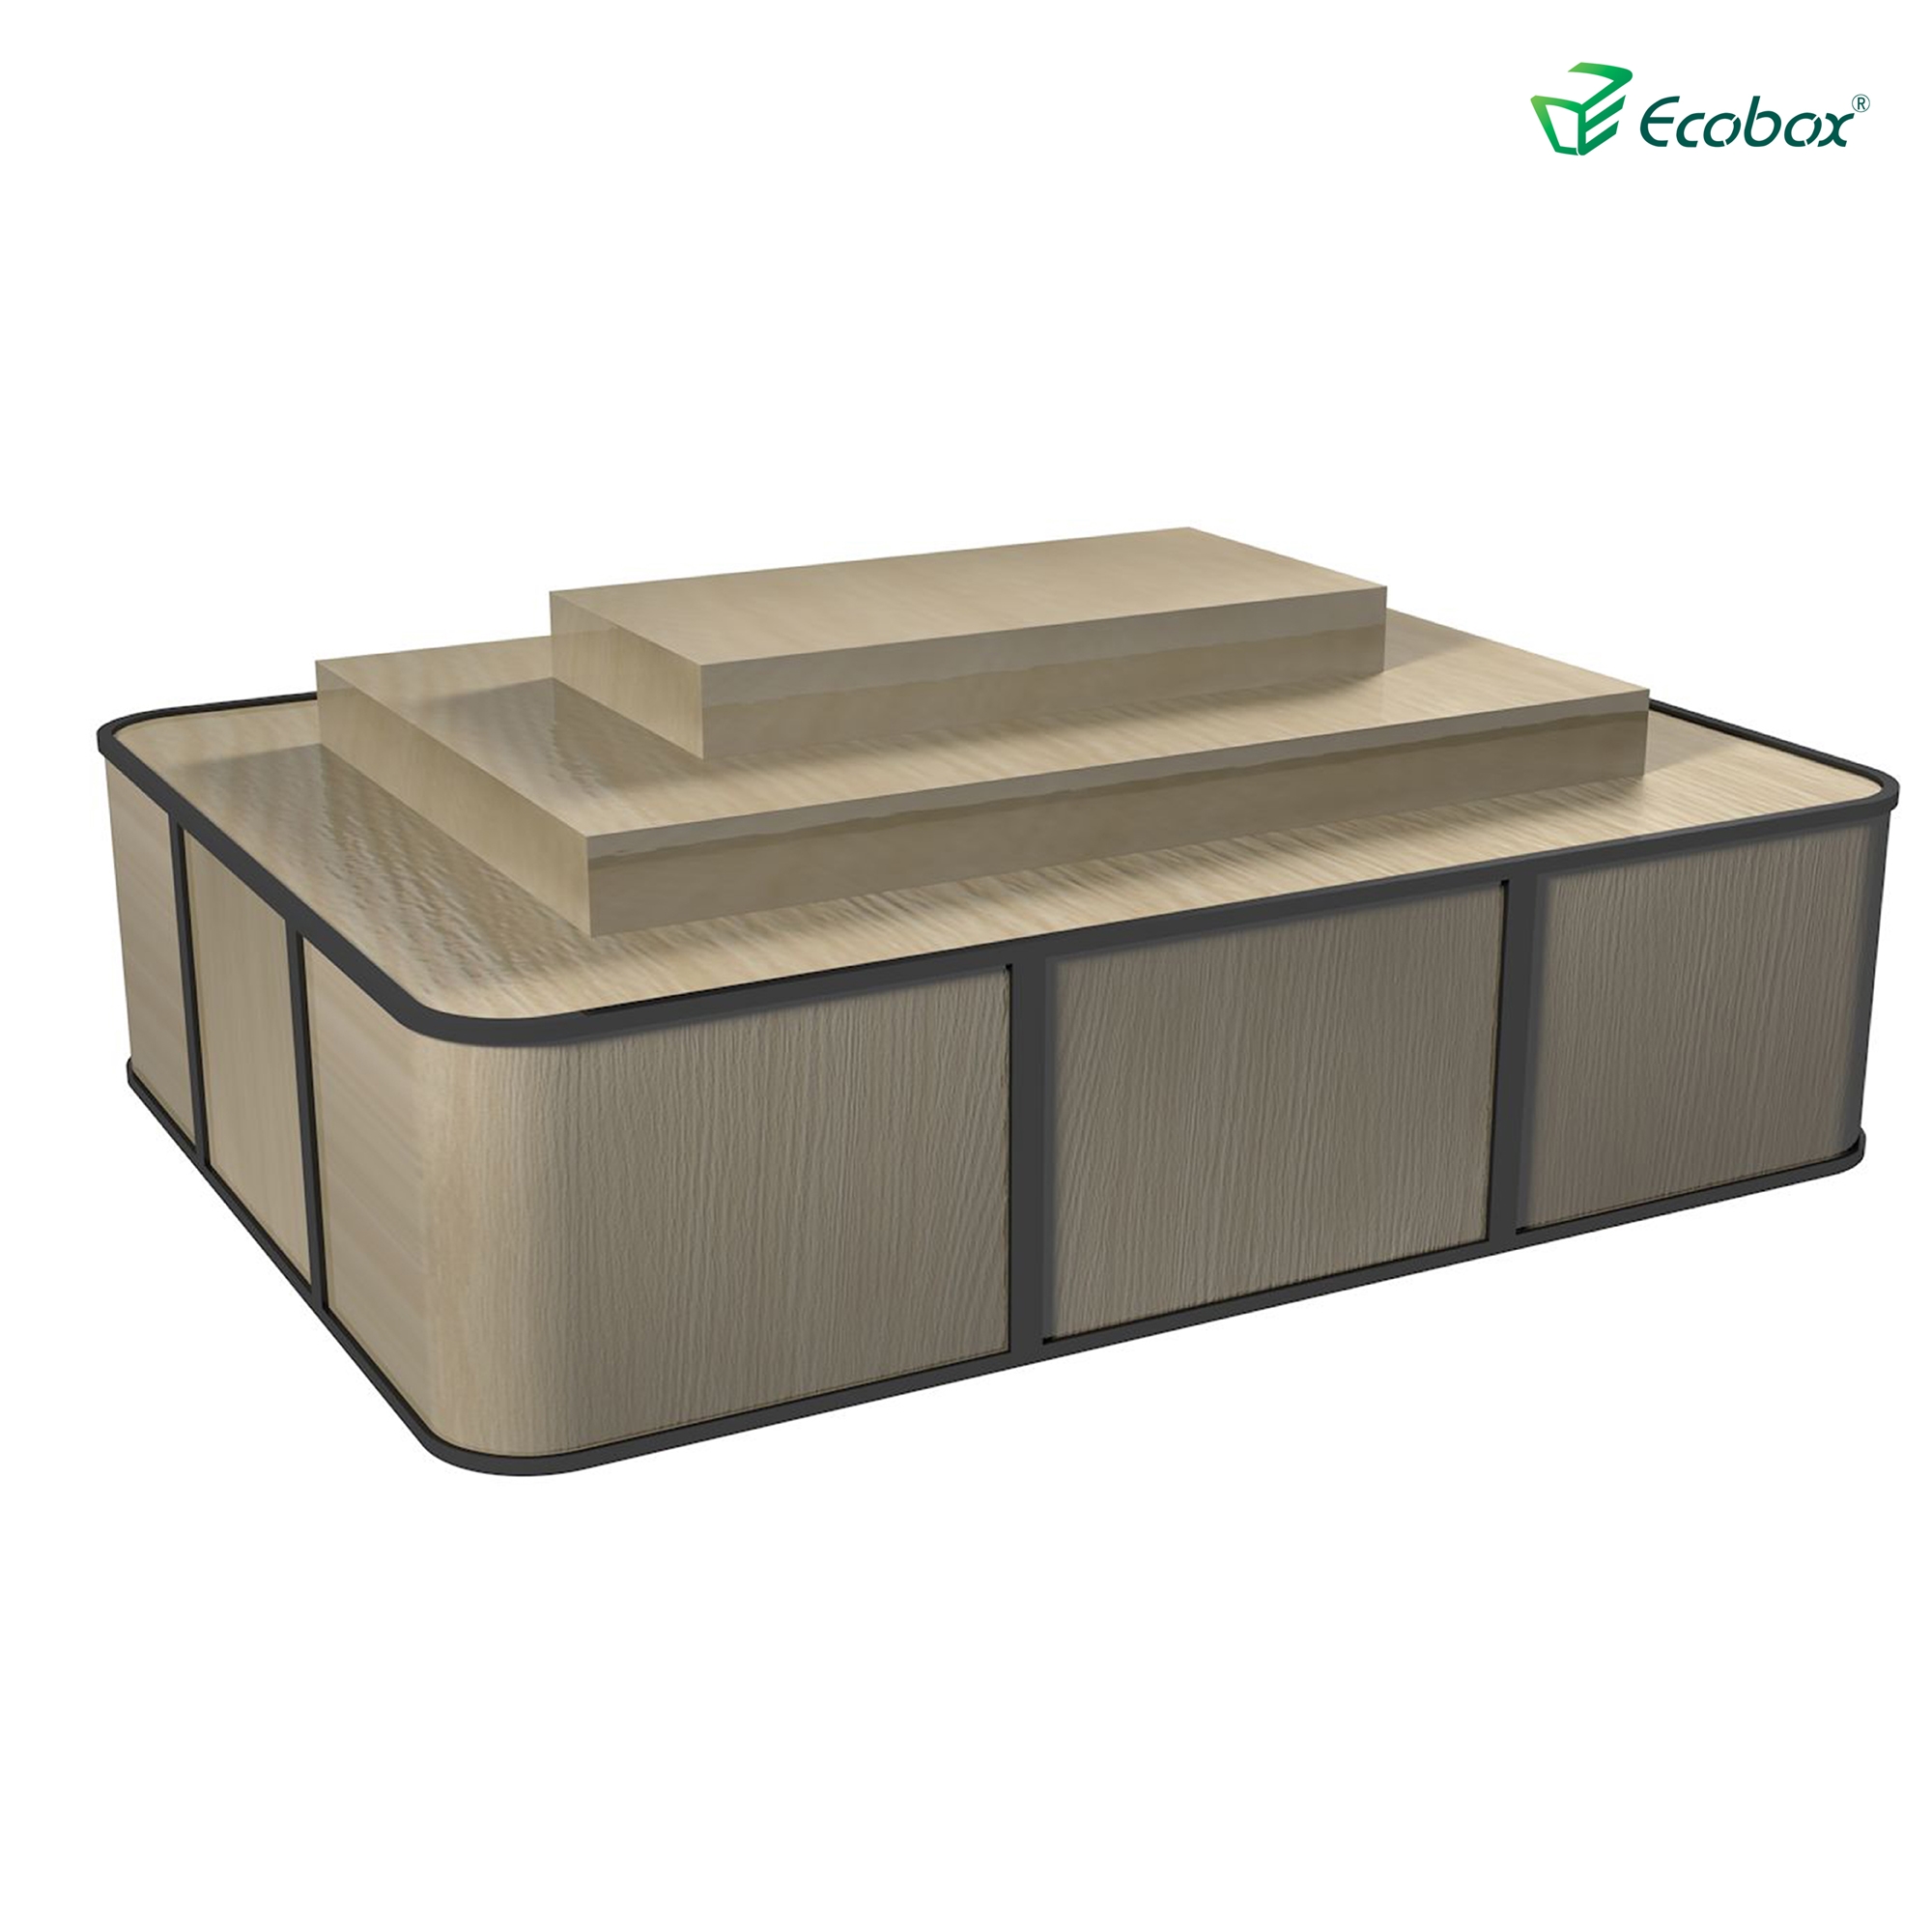 Ecobox G004-Serie-Regal mit Ecobox-Bulk-Bins Supermarkt-Bulk-Food-Anzeigen